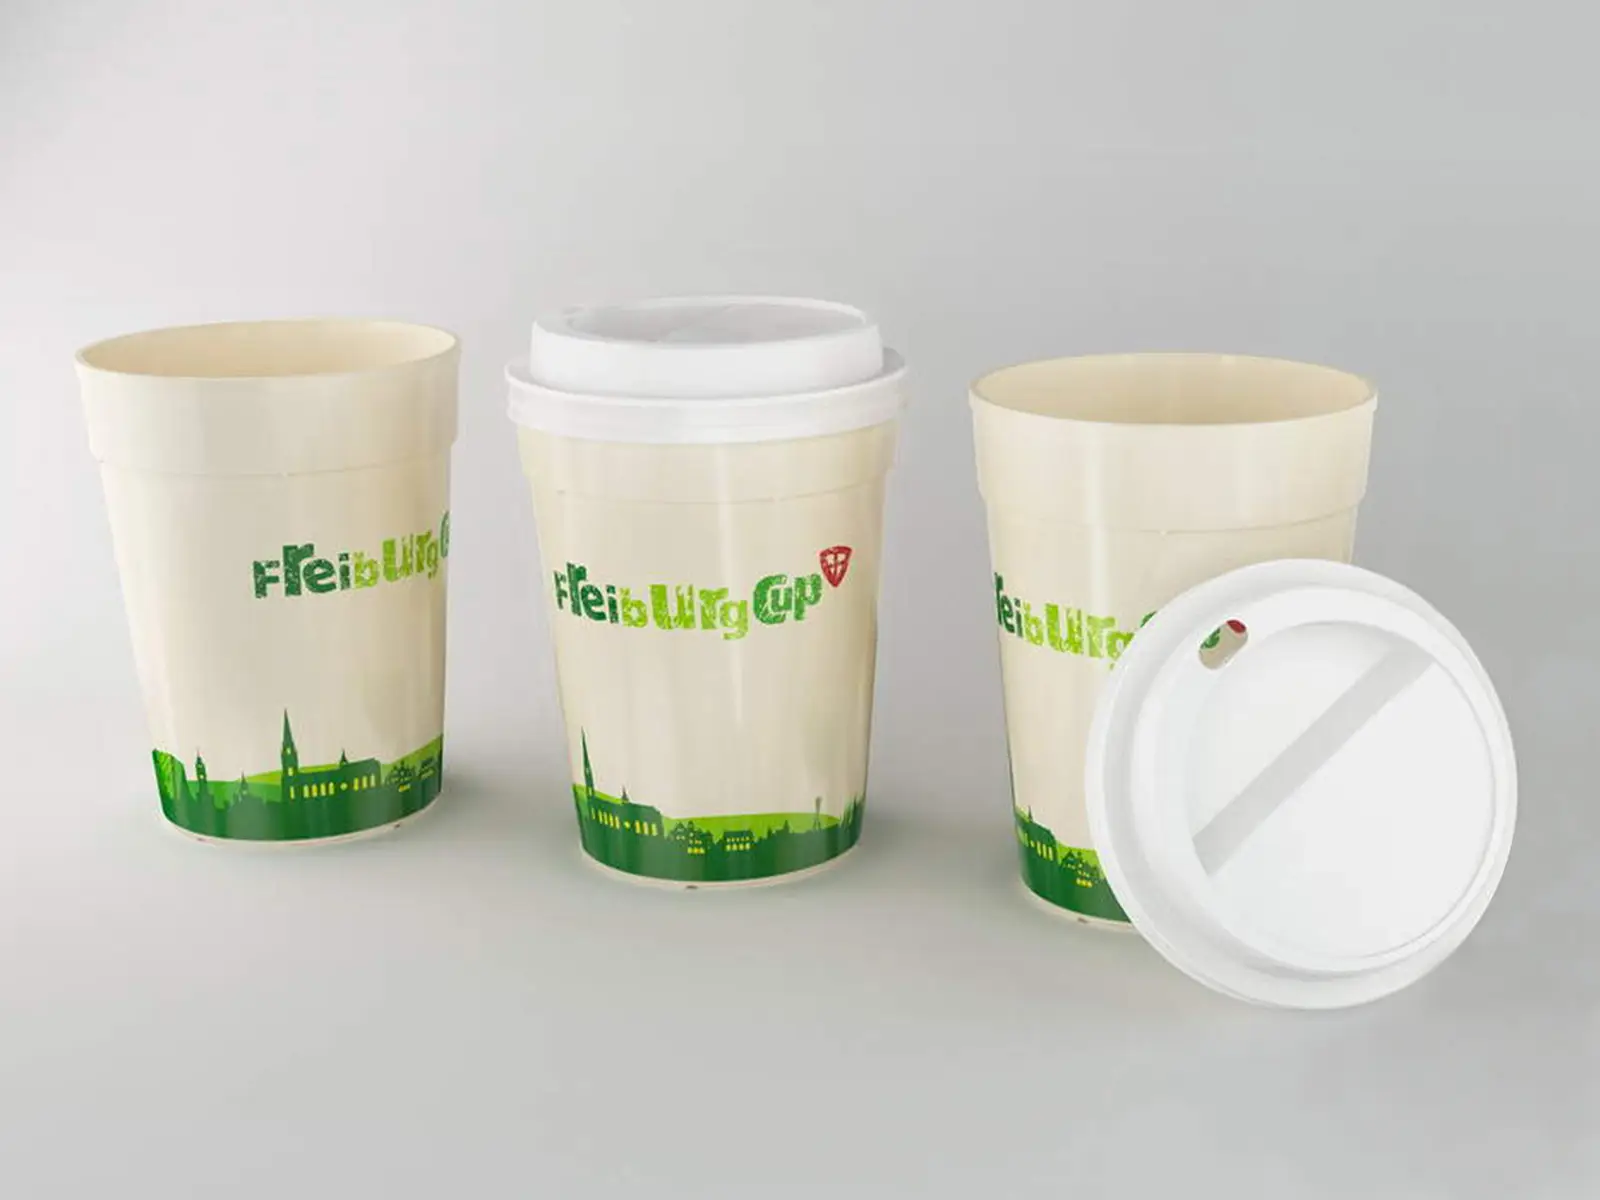 Freiburg Cup in Germania la tazza da caffè monouso diventa riutilizzabile con il cupsharing